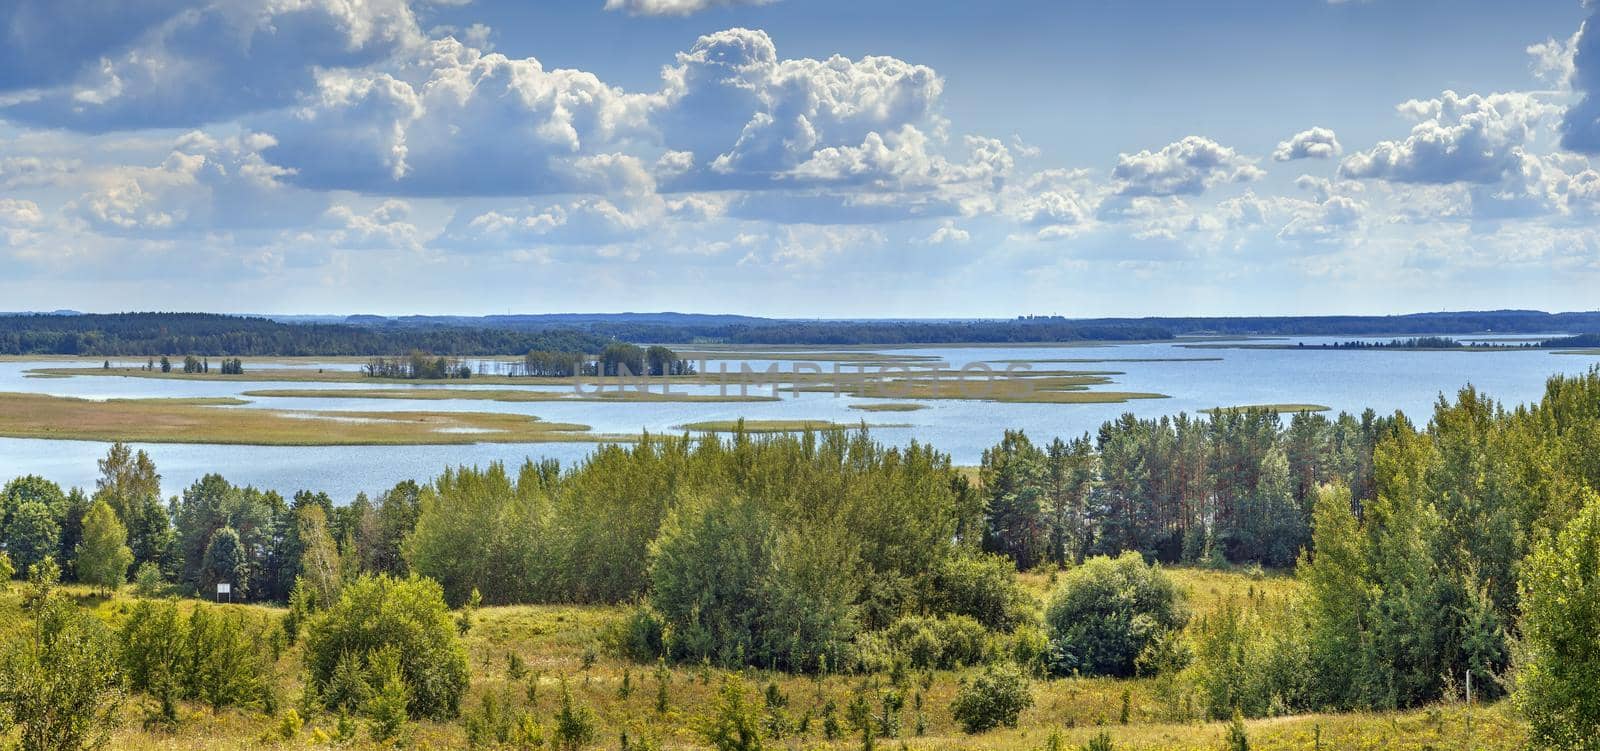 Landscape with lake Strusta, Belarus by borisb17